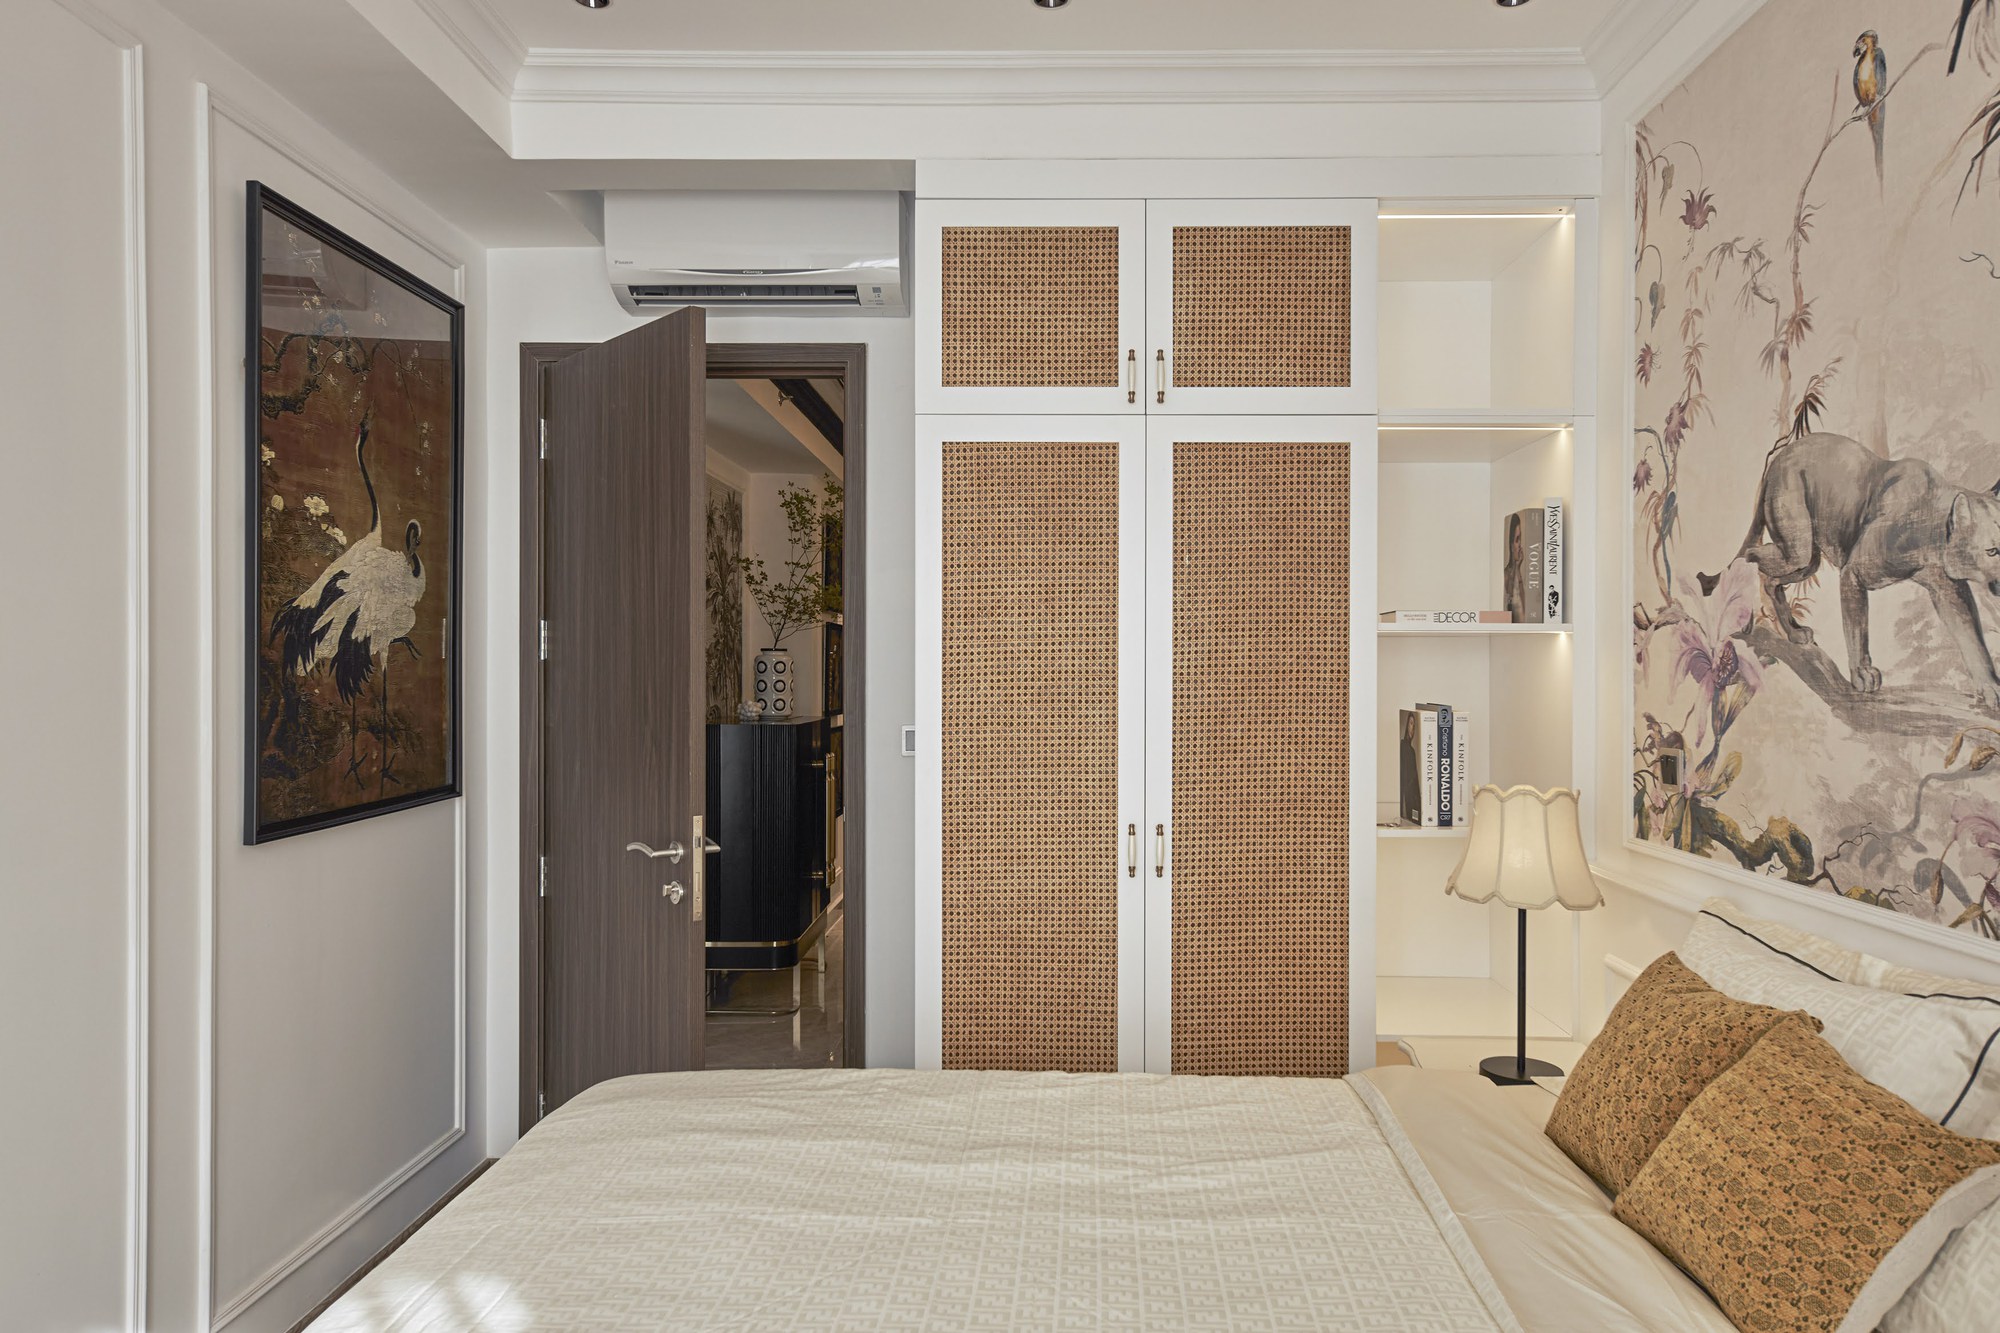 Căn hộ 127m² ở Phú Mỹ Hưng gây ấn tưởng nhờ phong cách châu Âu kết hợp chất liệu nội thất thuần Việt - Ảnh 8.